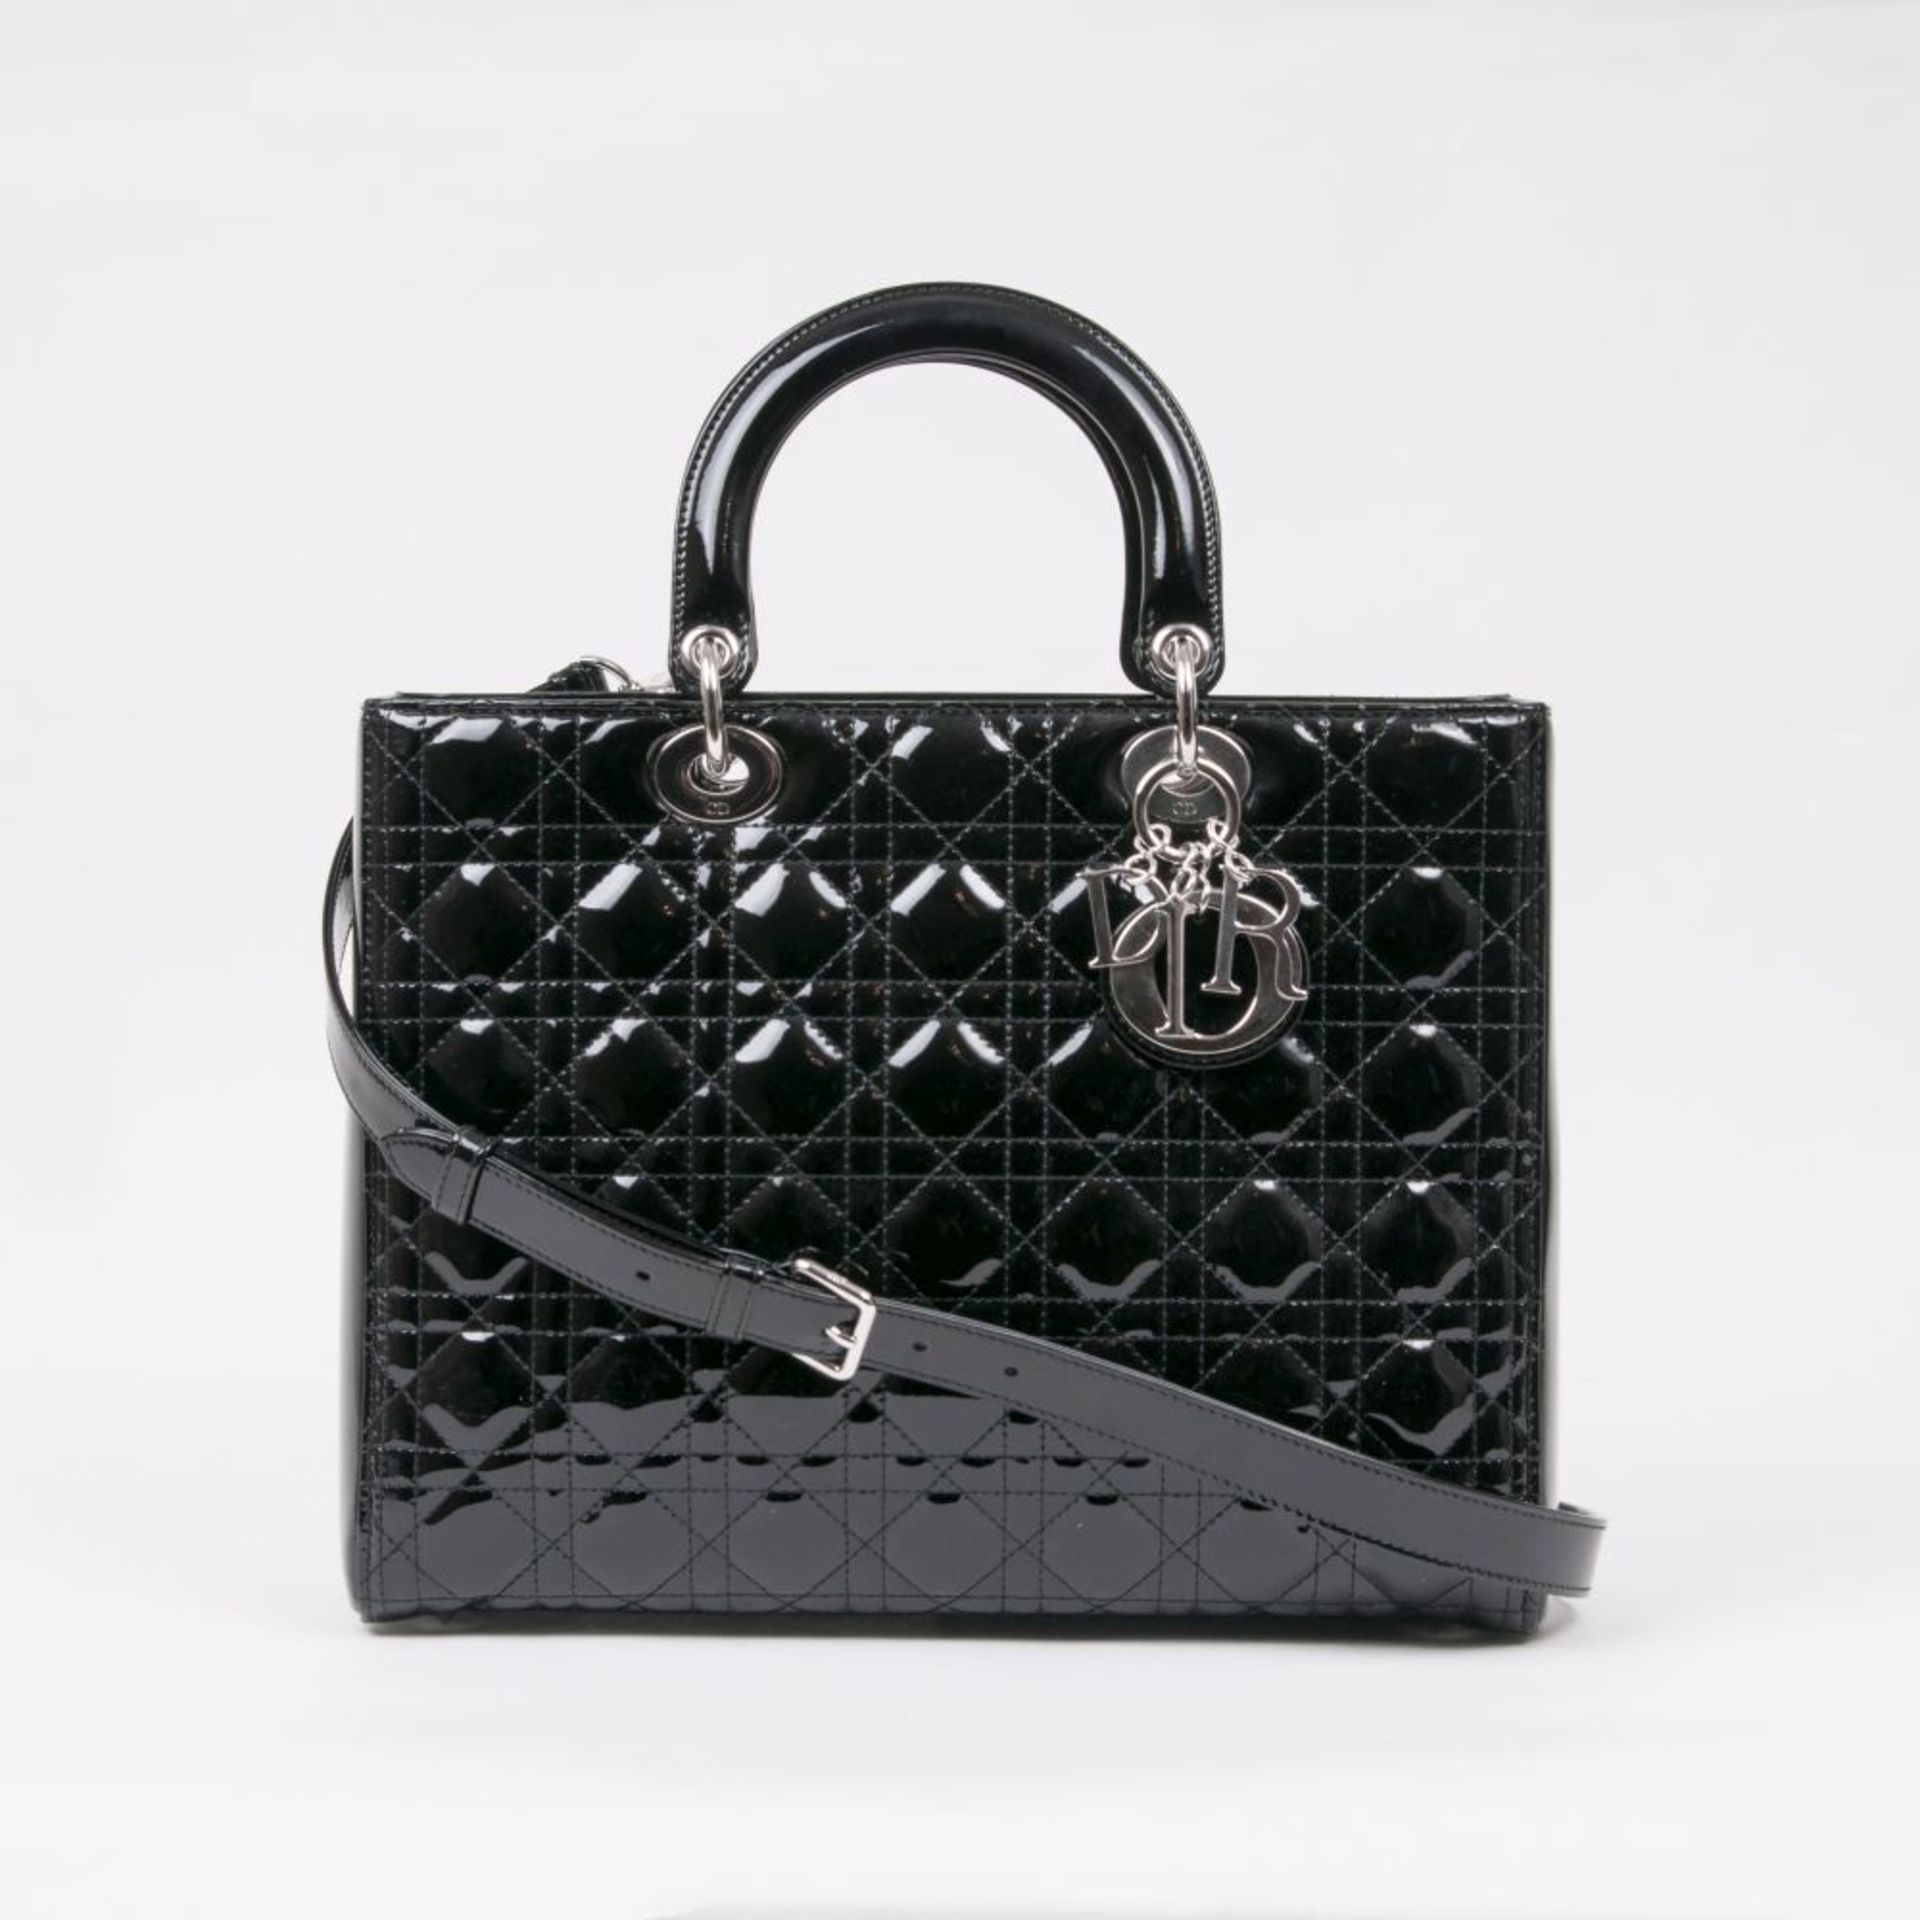 Christian Dior. Lady Dior Bag Black.